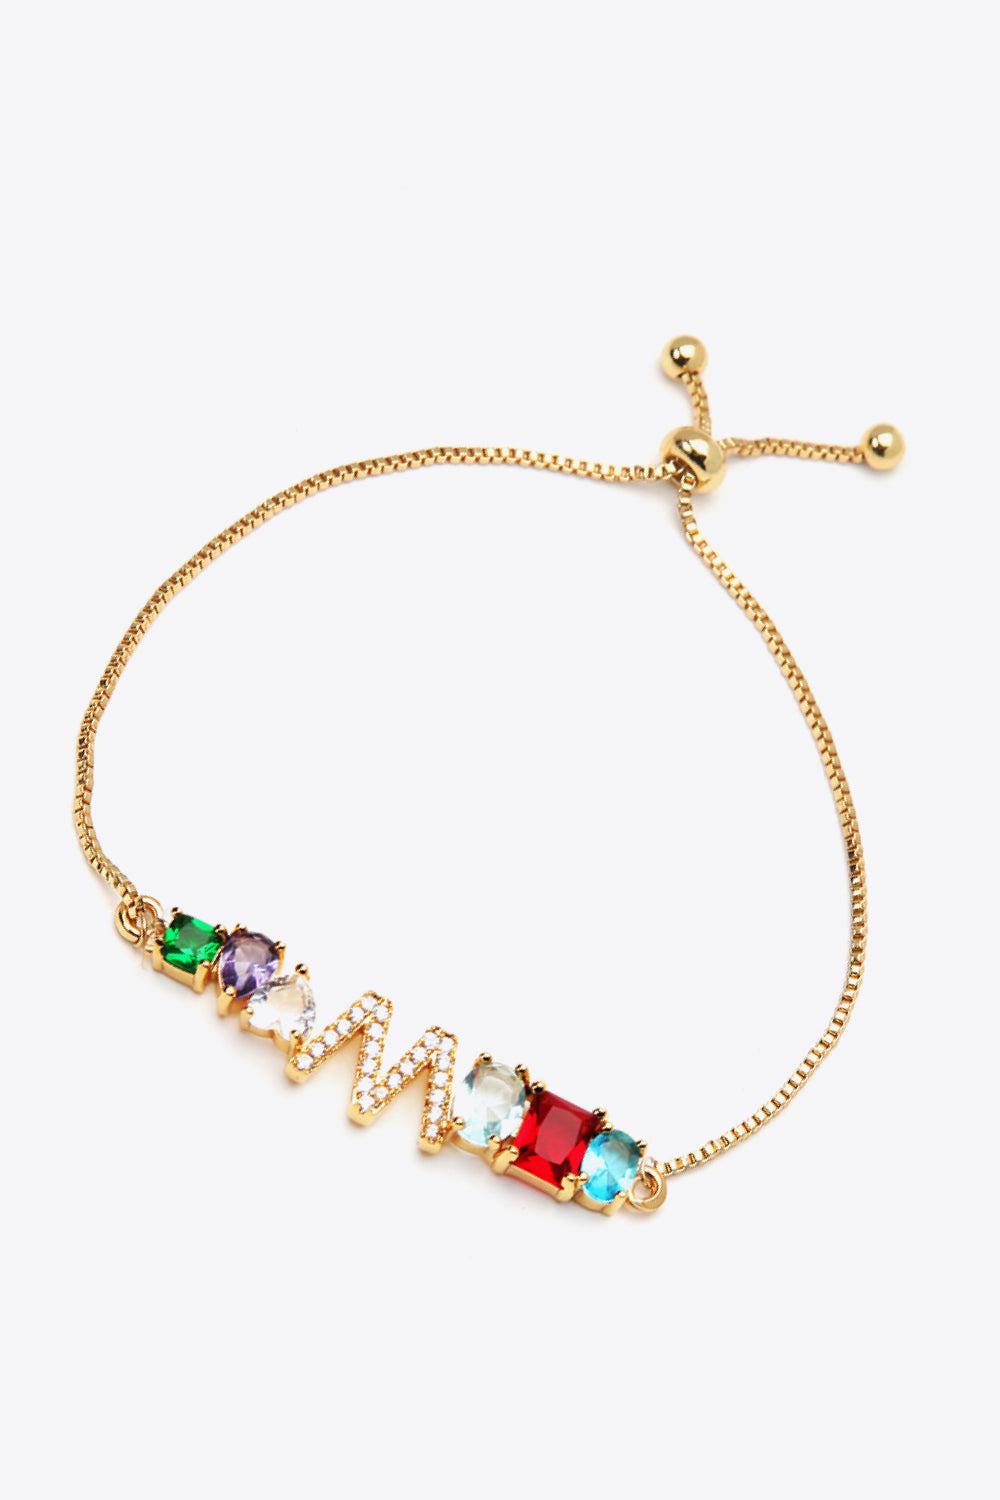 K to T Zircon Bracelet - Women’s Jewelry - Bracelets - 8 - 2024